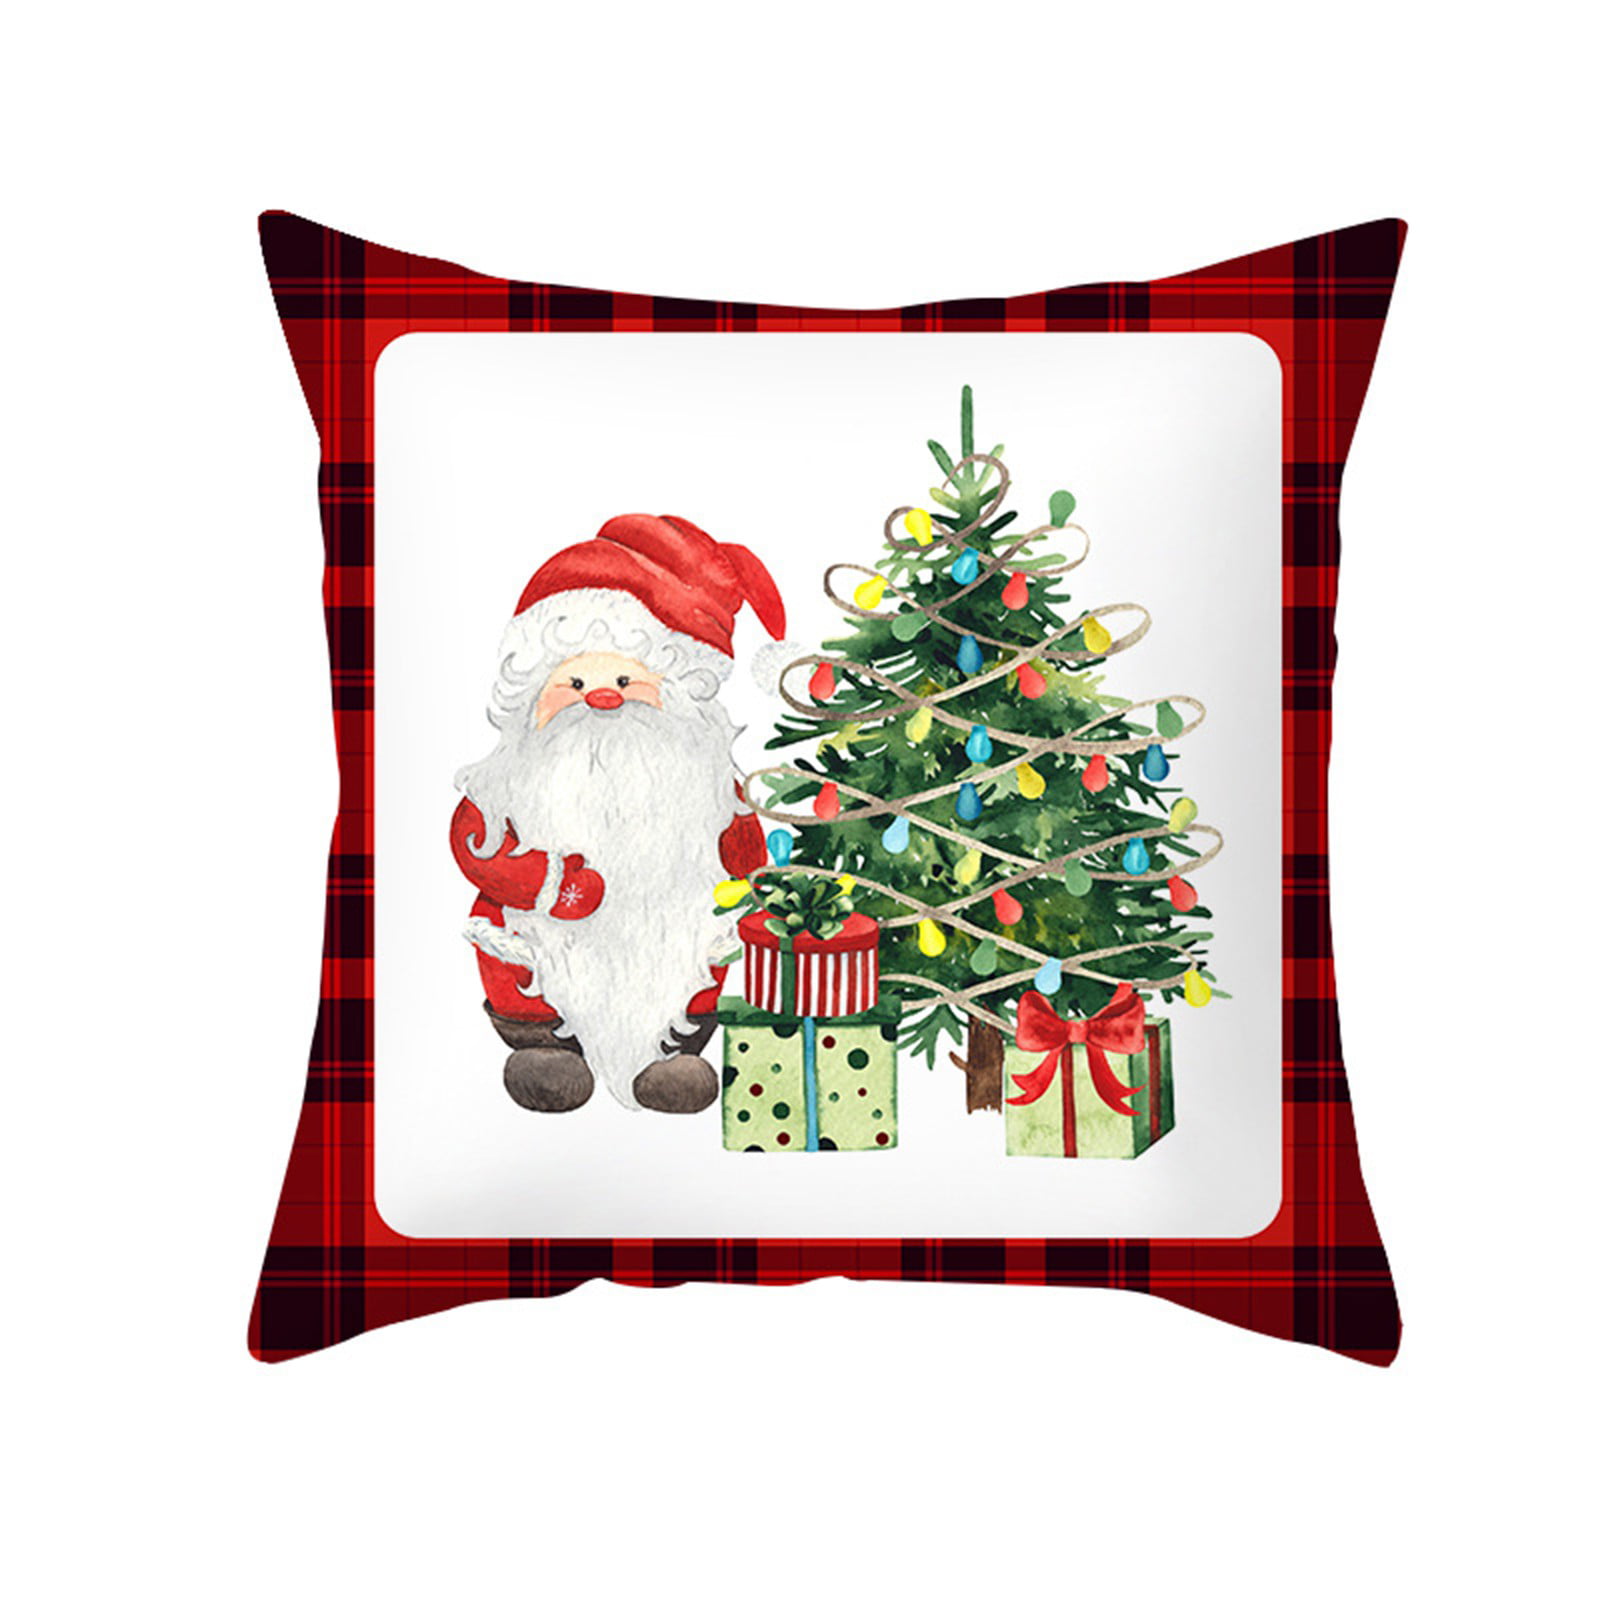 Christmas Cotton Linen Pillow Case Sofa Throw Cushion Cover Home Decor Xmas Gift 